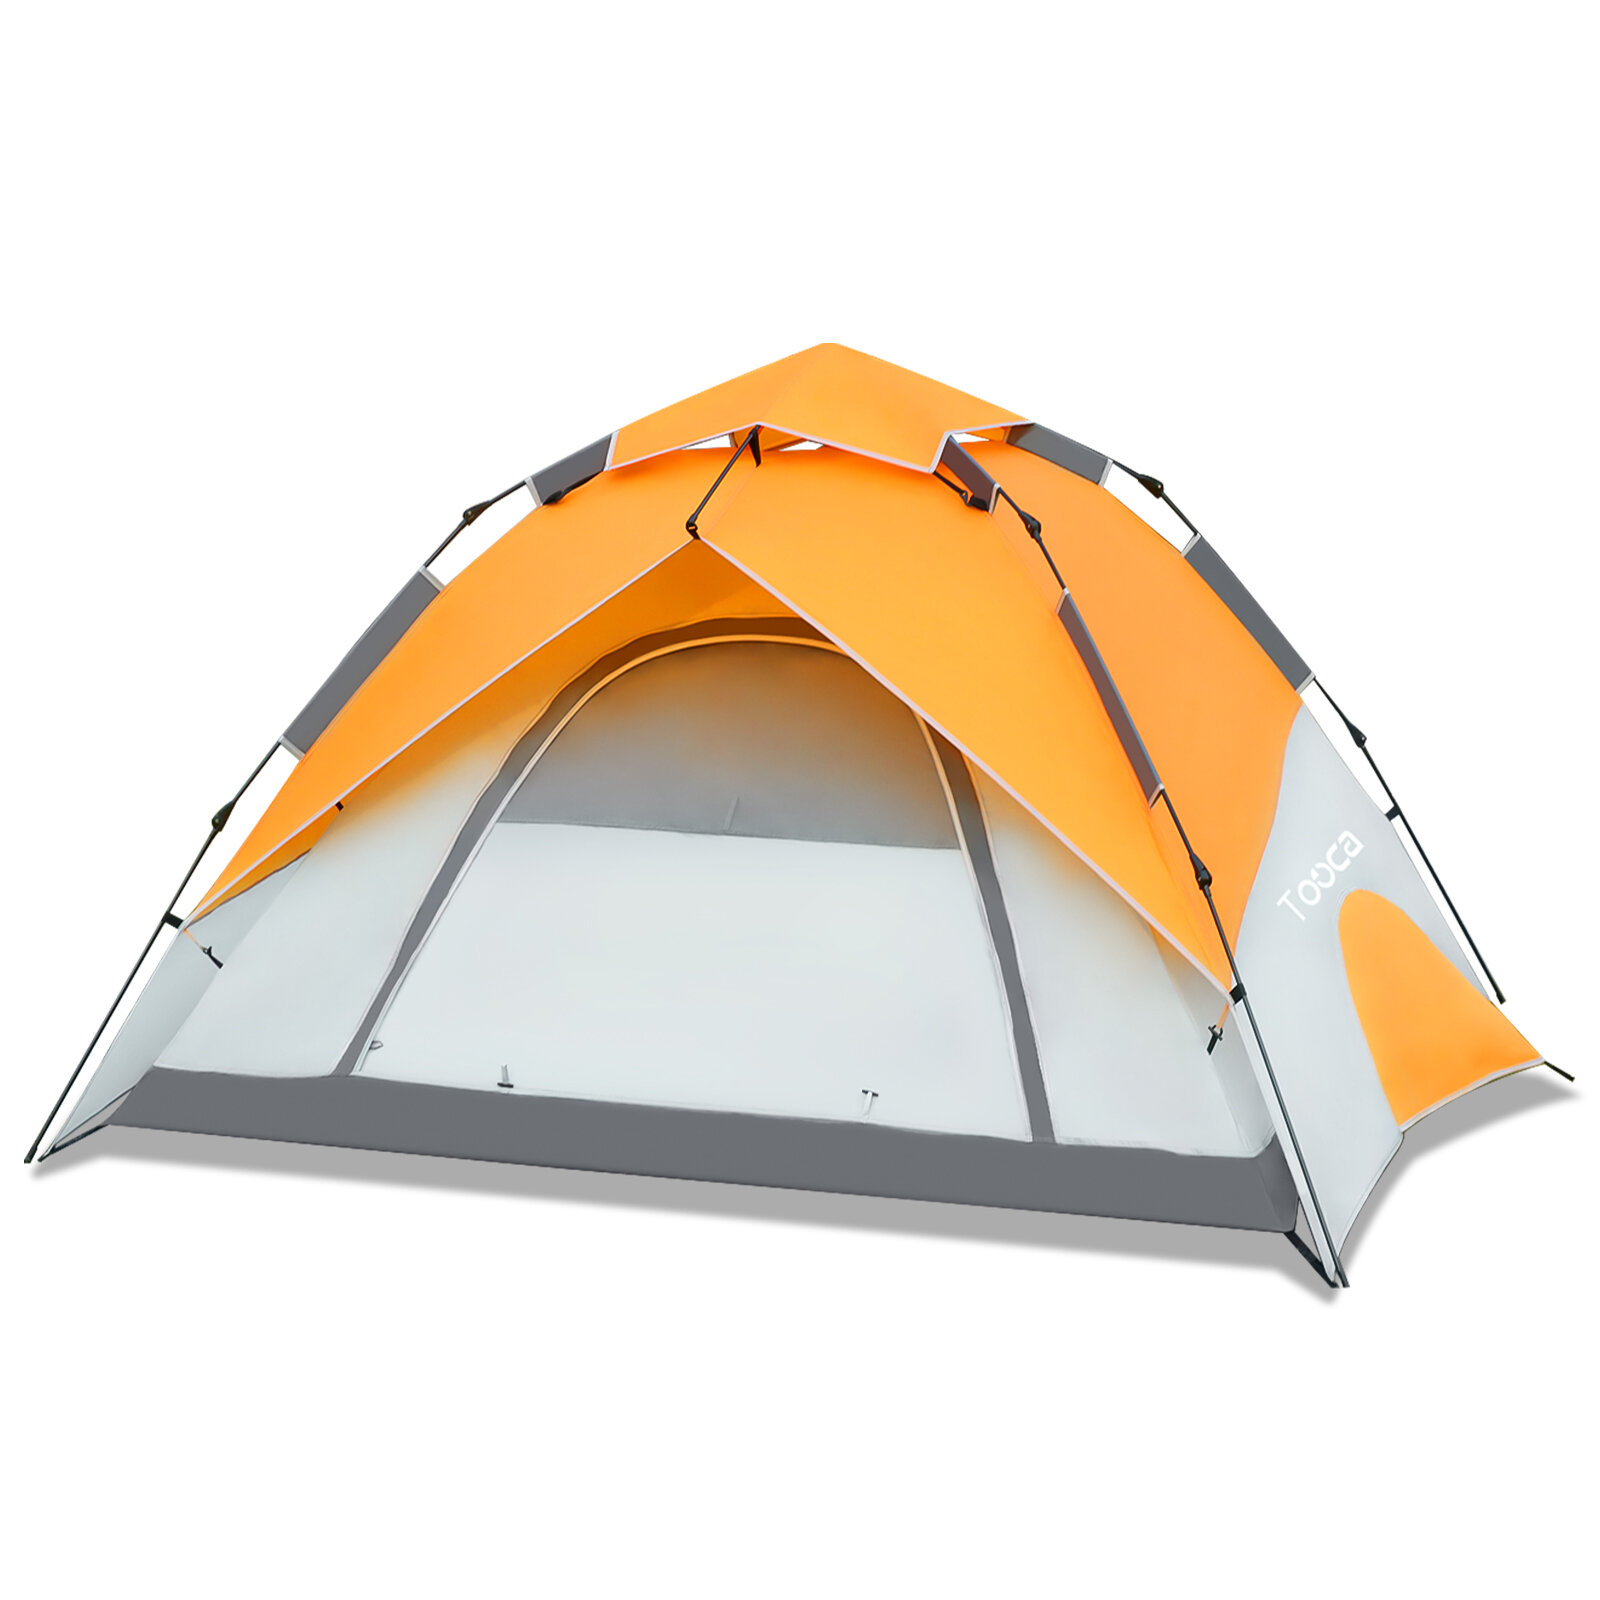 Tooca4人用キャンプテント、インスタントセットアップ、自動ドームテント、防水、防風、アウトドアキャンプ日除けシェルター。